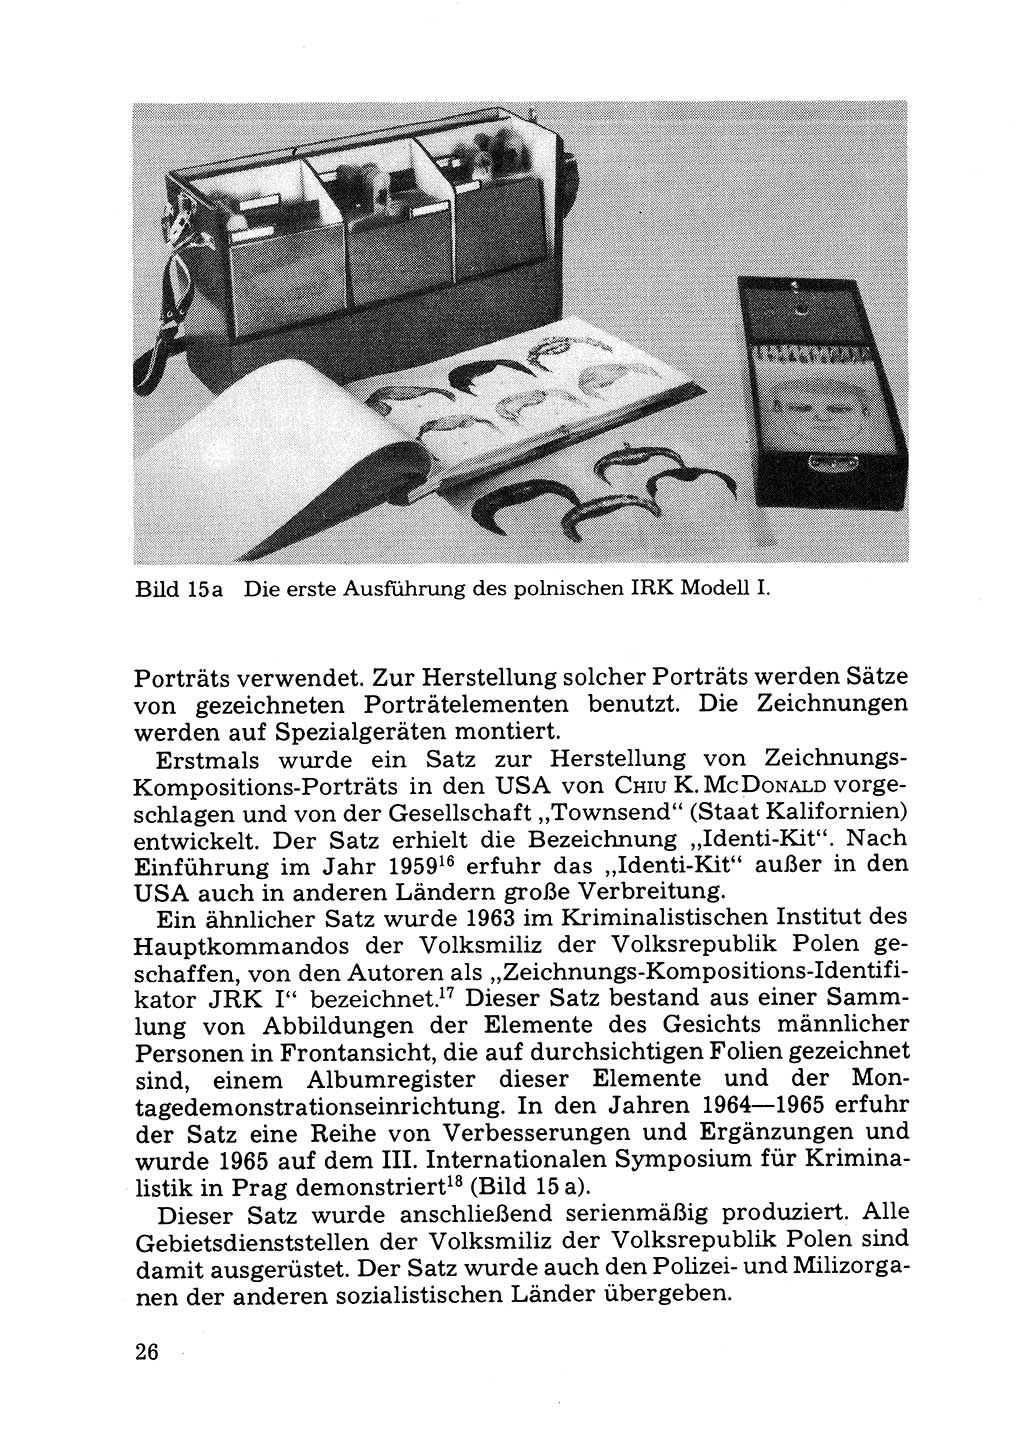 Das subjektive Porträt [Deutsche Demokratische Republik (DDR)] 1981, Seite 26 (Subj. Port. DDR 1981, S. 26)